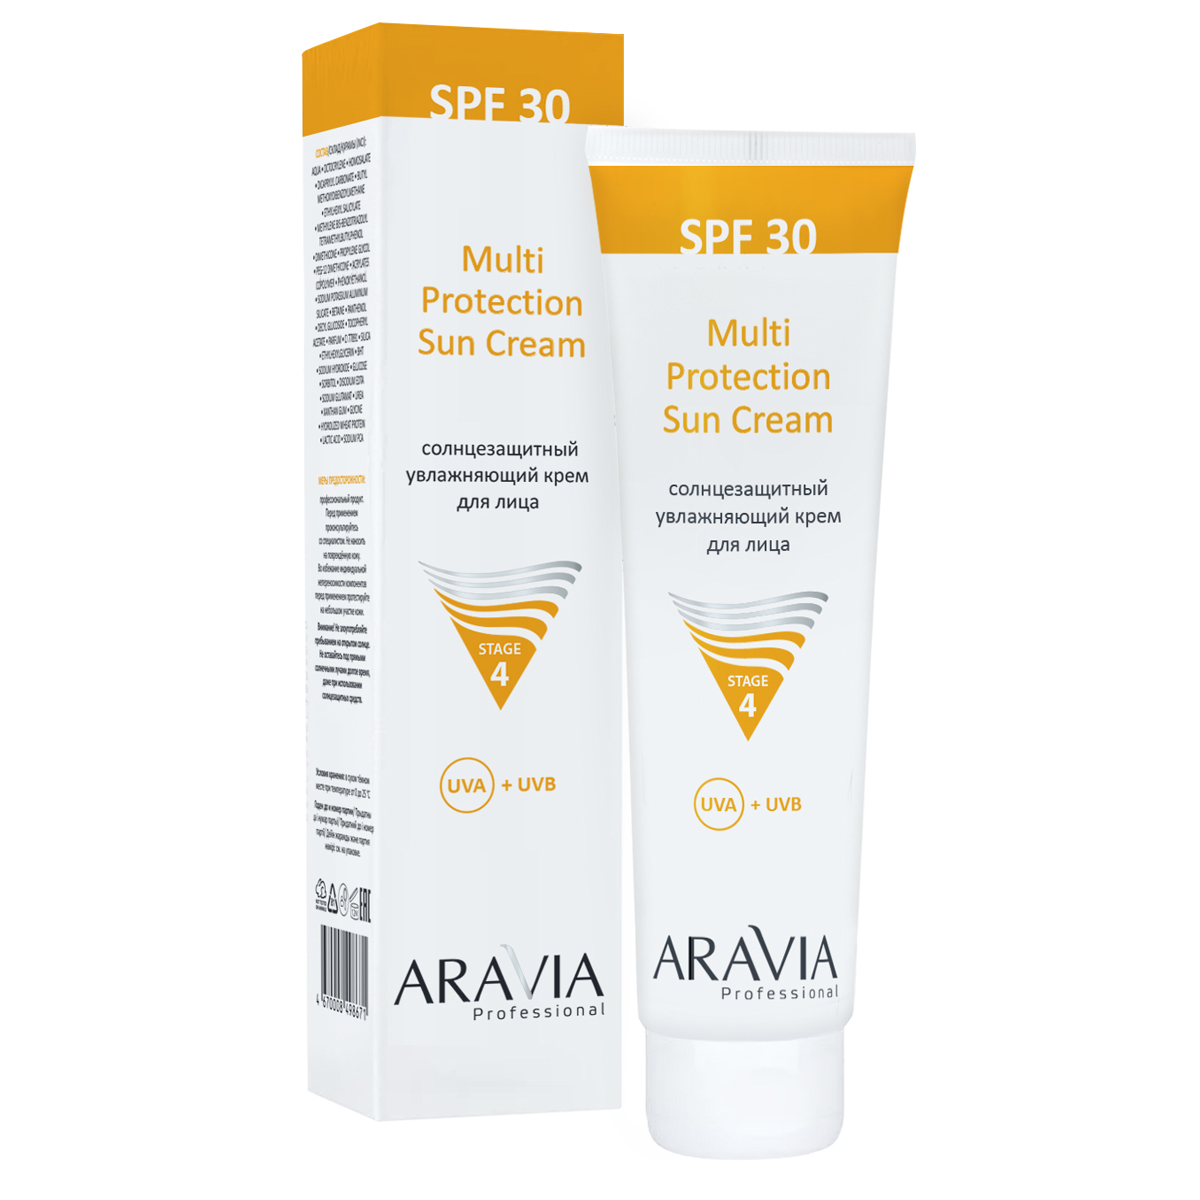 Aravia Professional Cолнцезащитный увлажняющий крем для лица